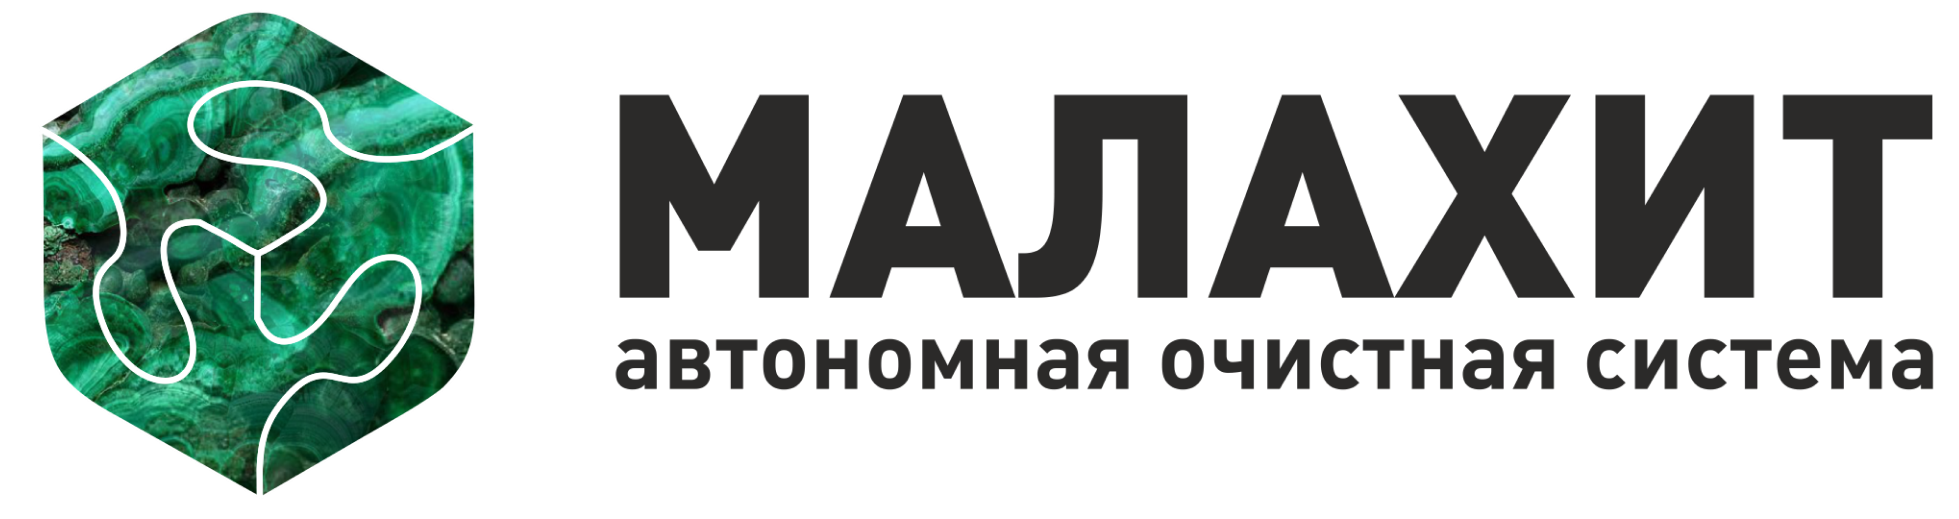 МАЛАХИТ - Производство автономной очистной системы